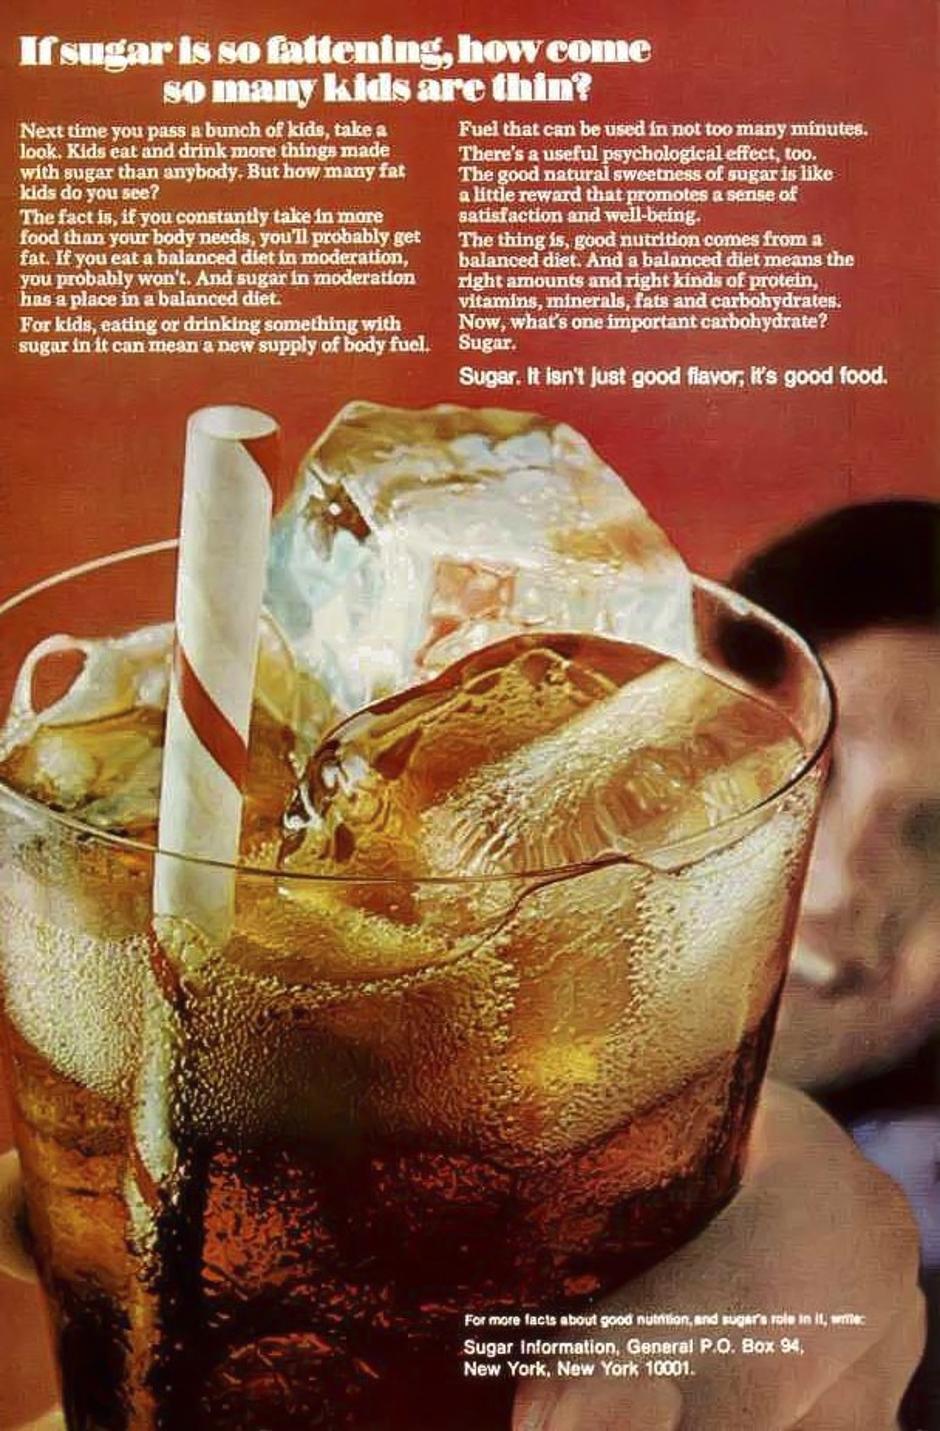 Oglasi za šećer iz 1970-ih | Author: Atlantic